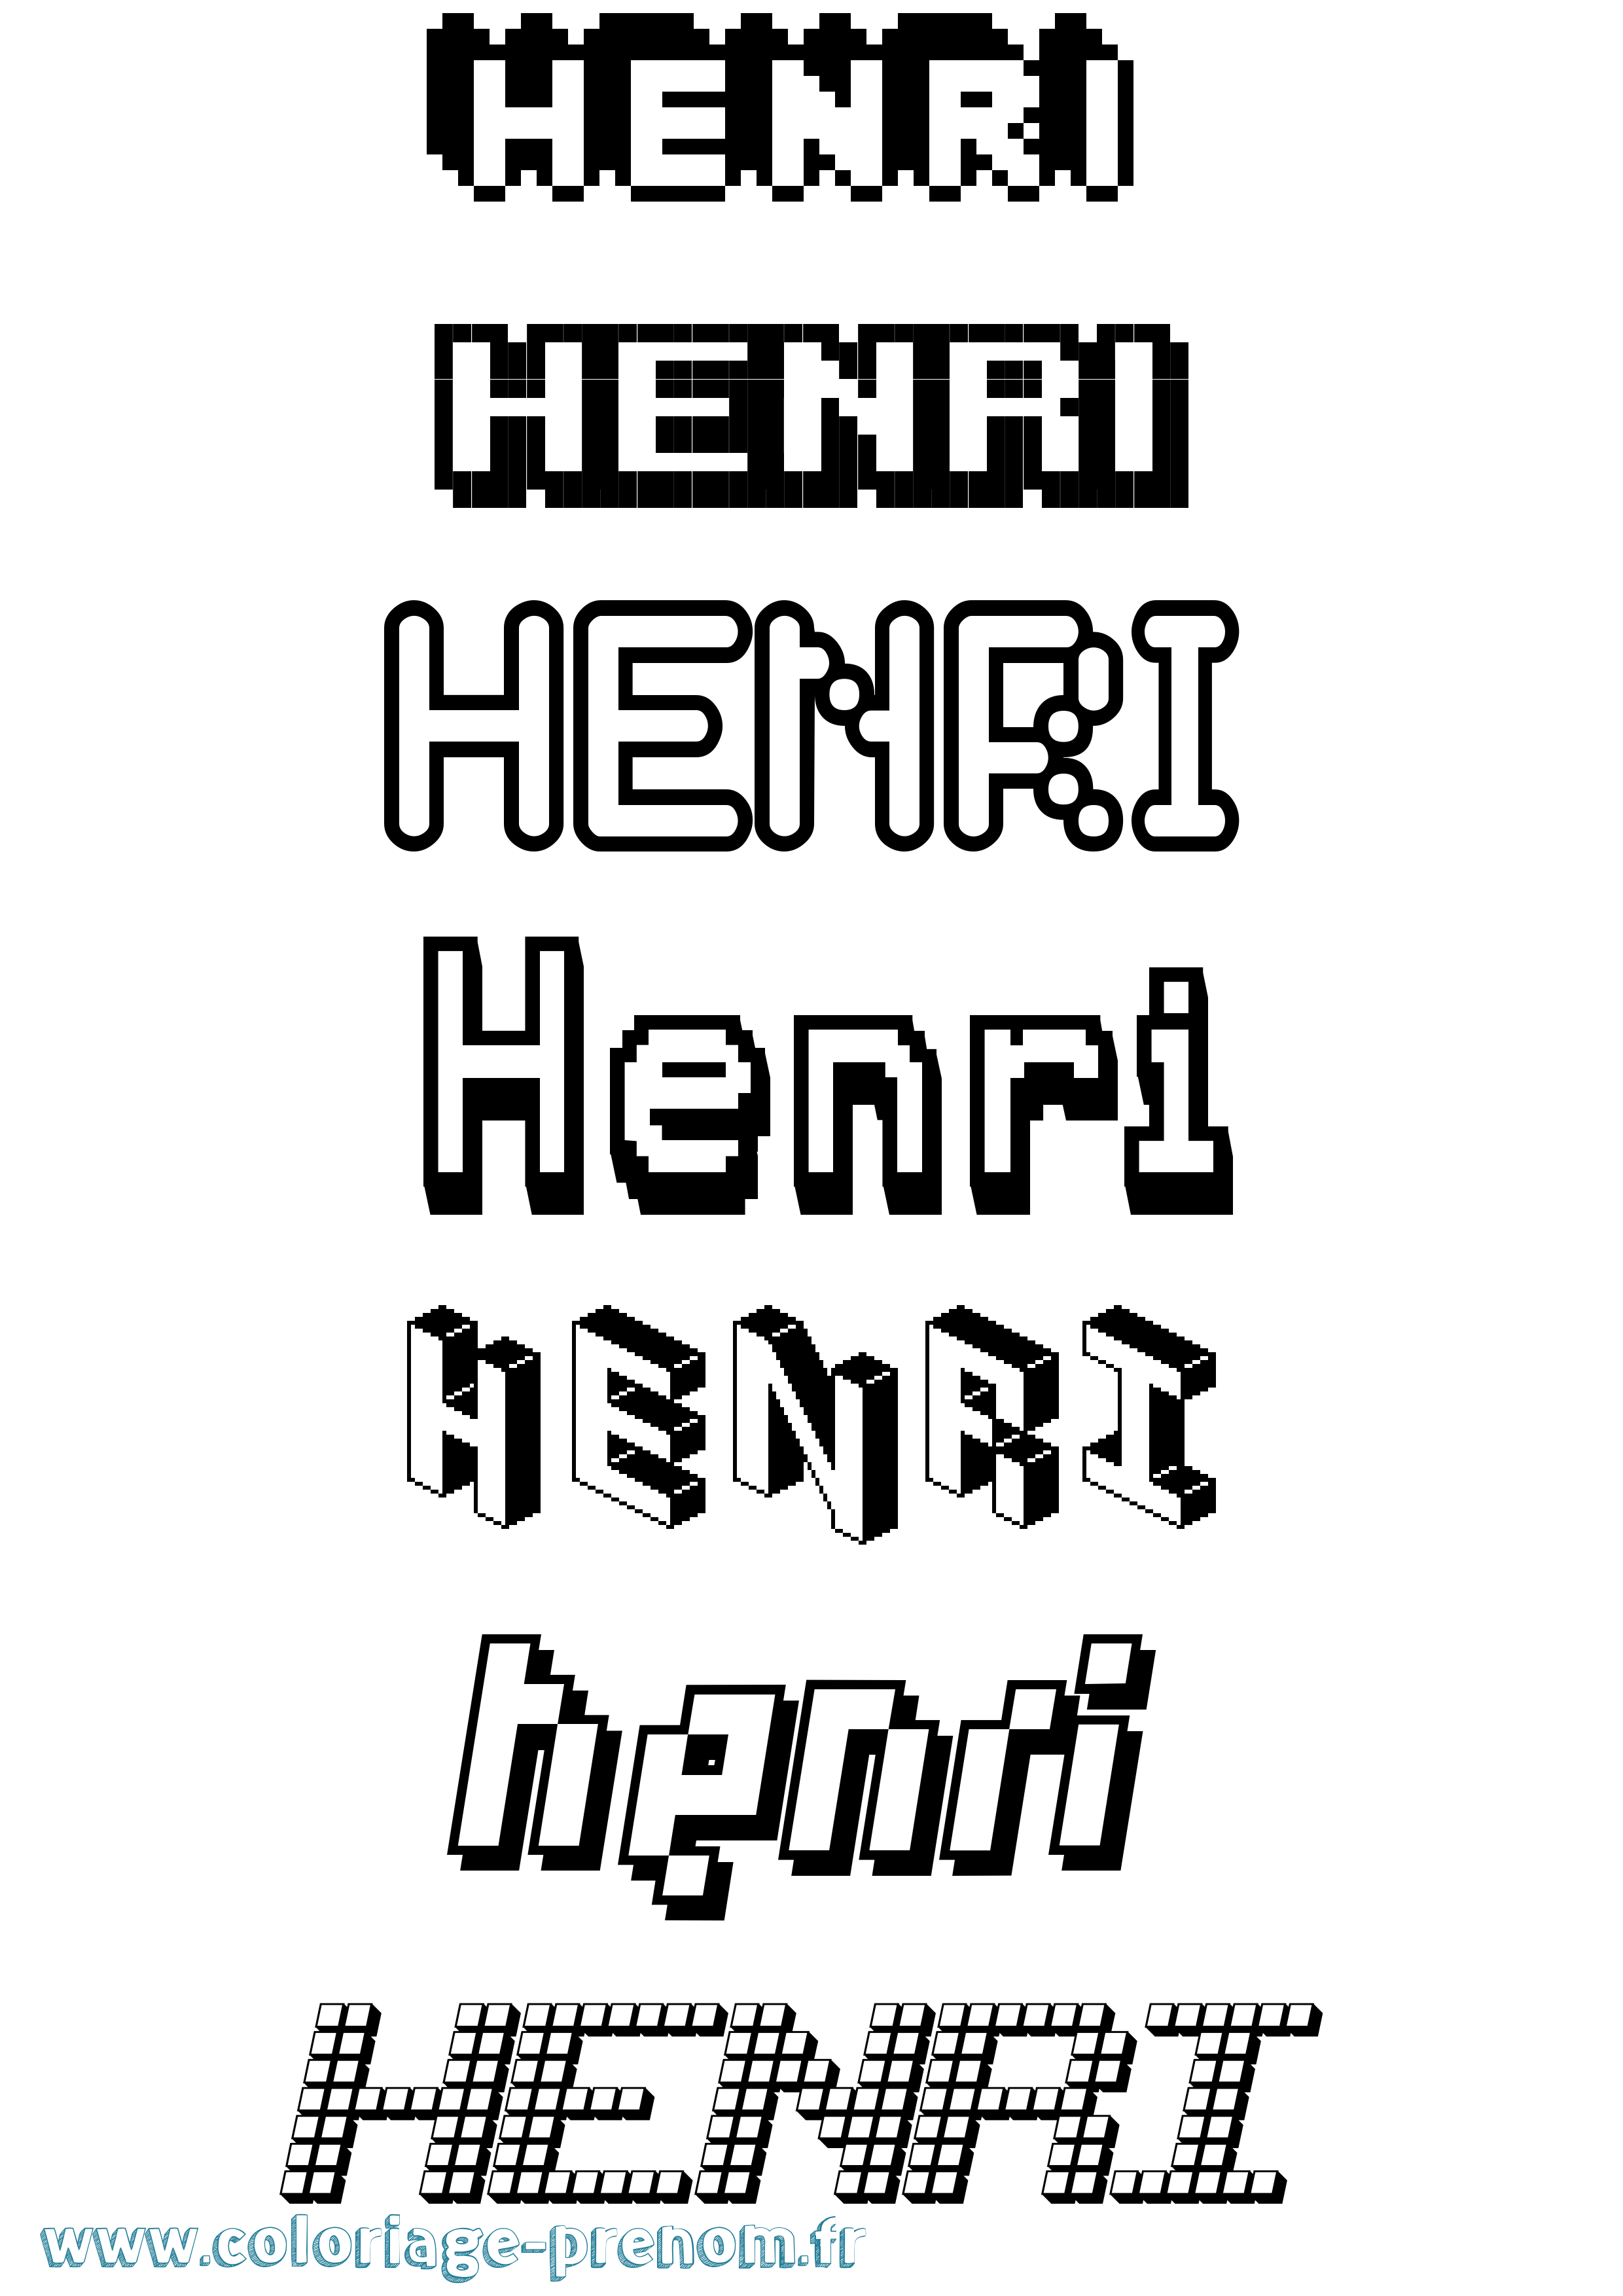 Coloriage prénom Henri